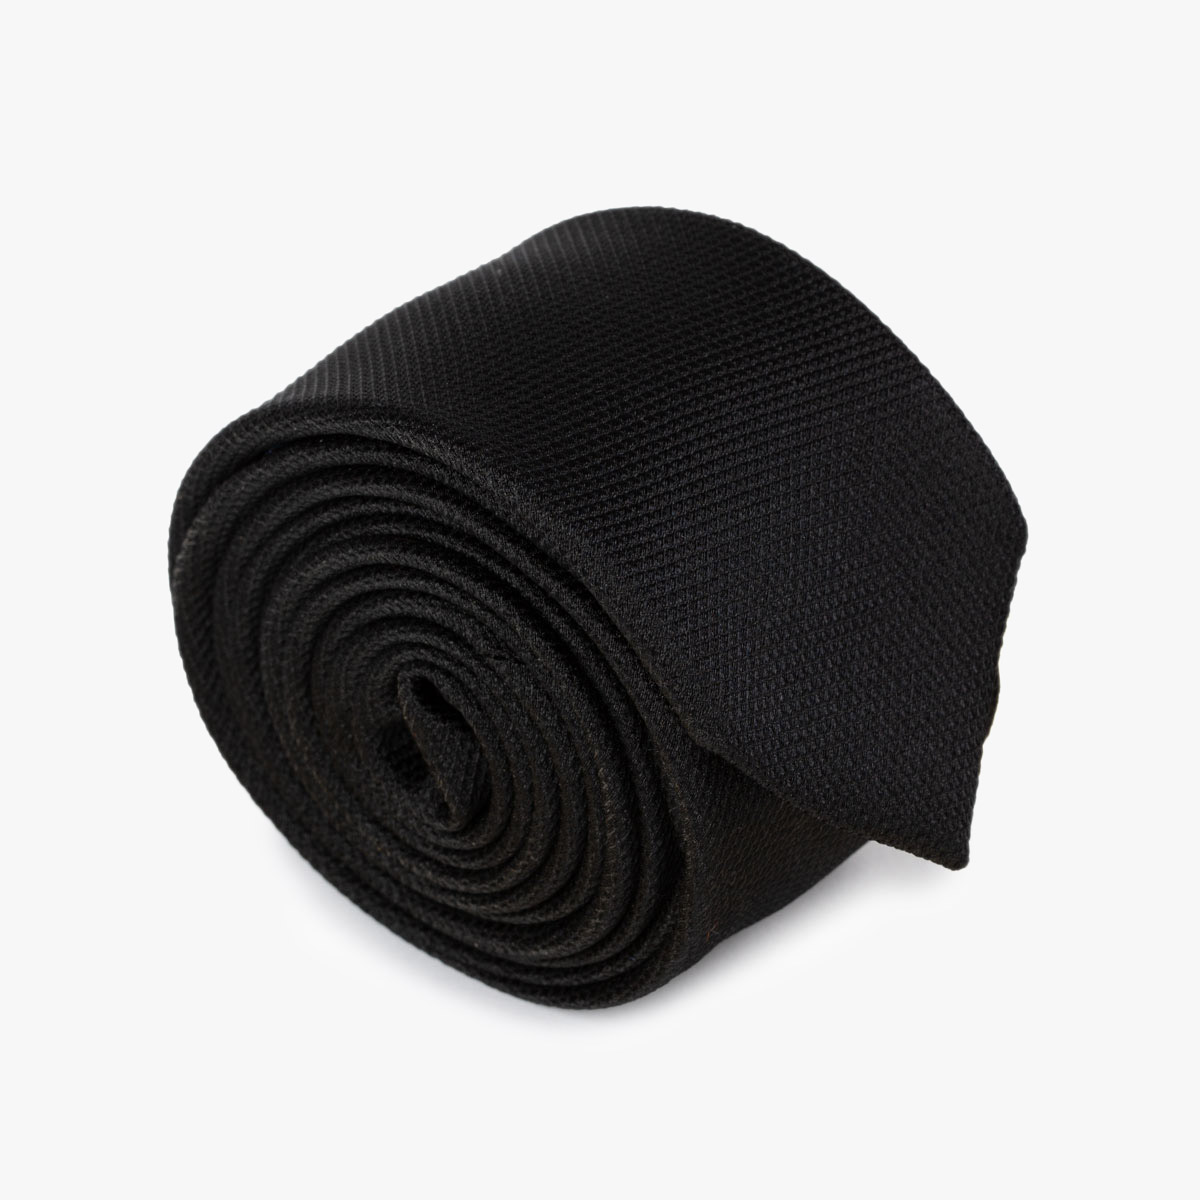 Aufgerollte, schmale Krawatte mit feiner Struktur in uni schwarz